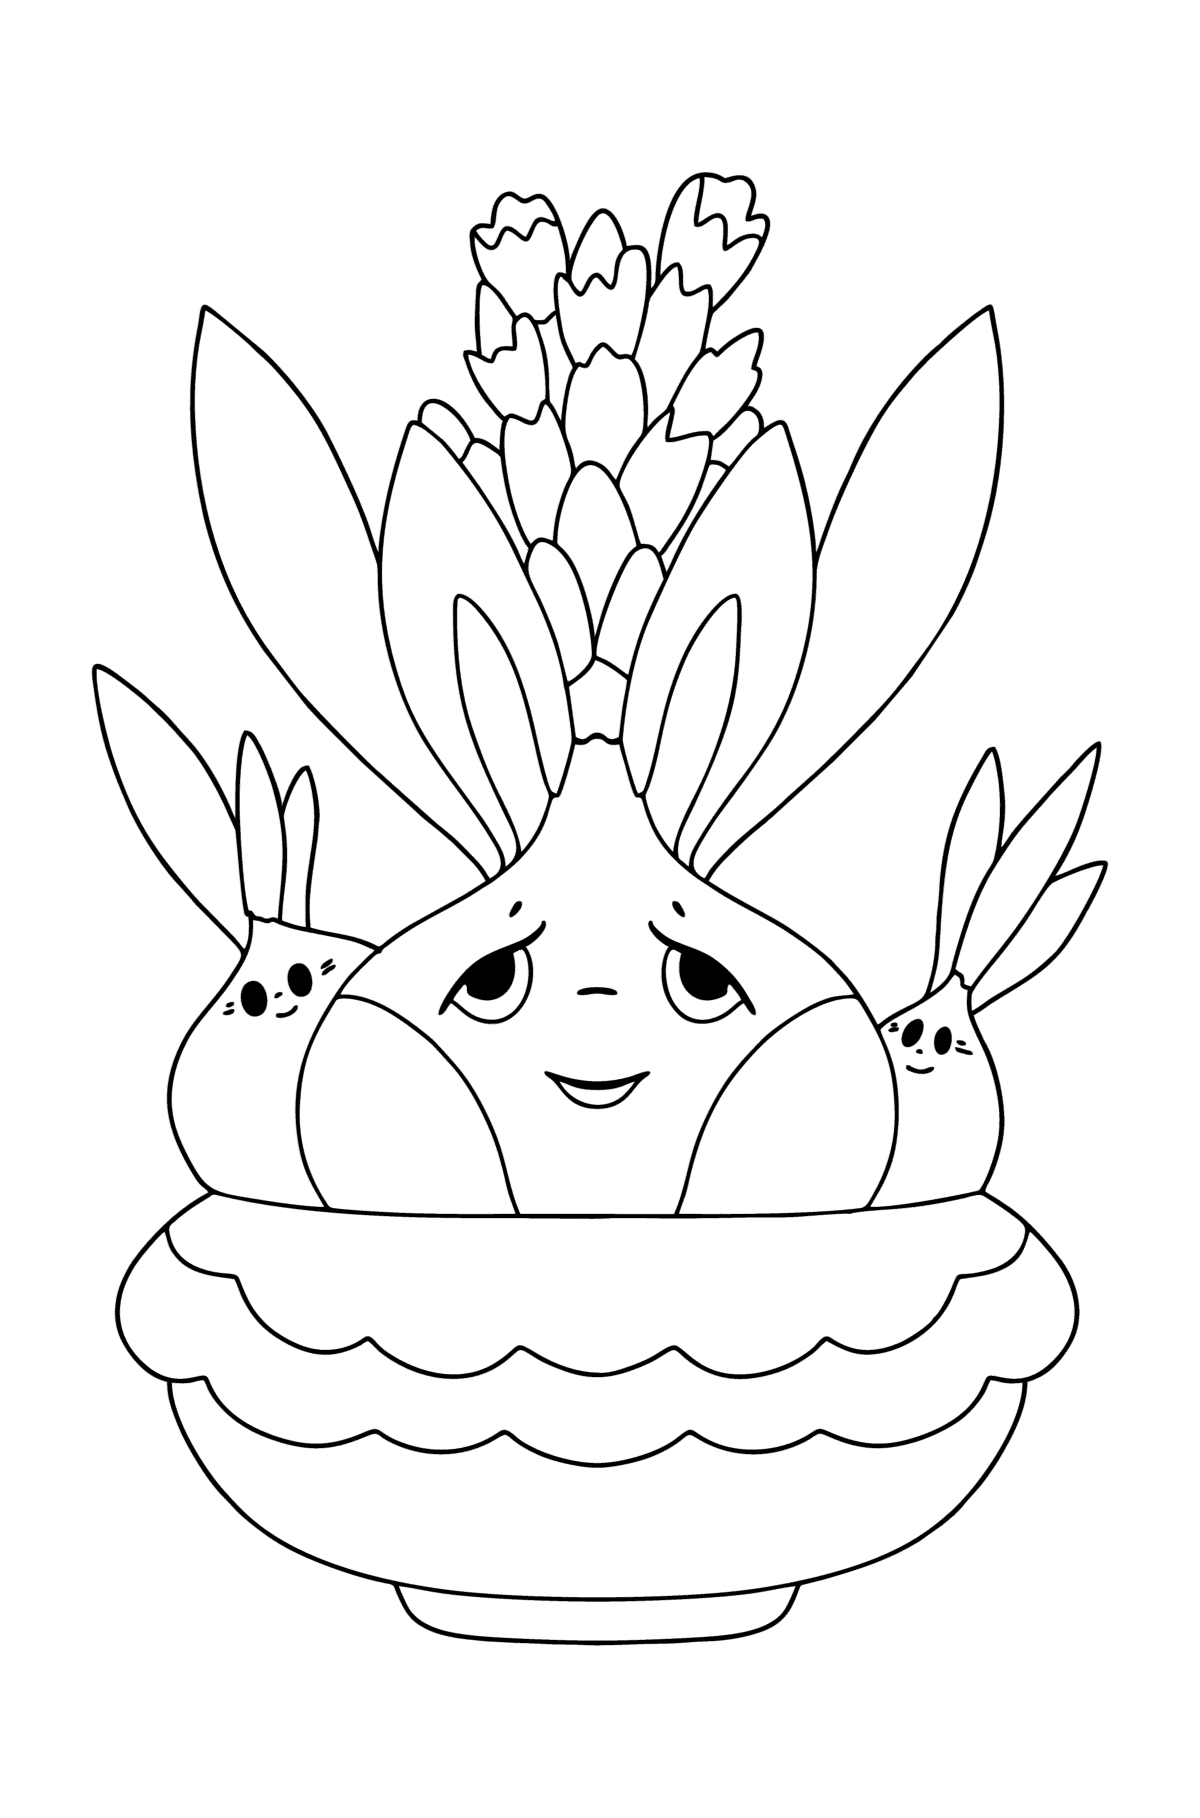 Tegning til fargelegging Hyacinth blomster med øyne - Tegninger til fargelegging for barn